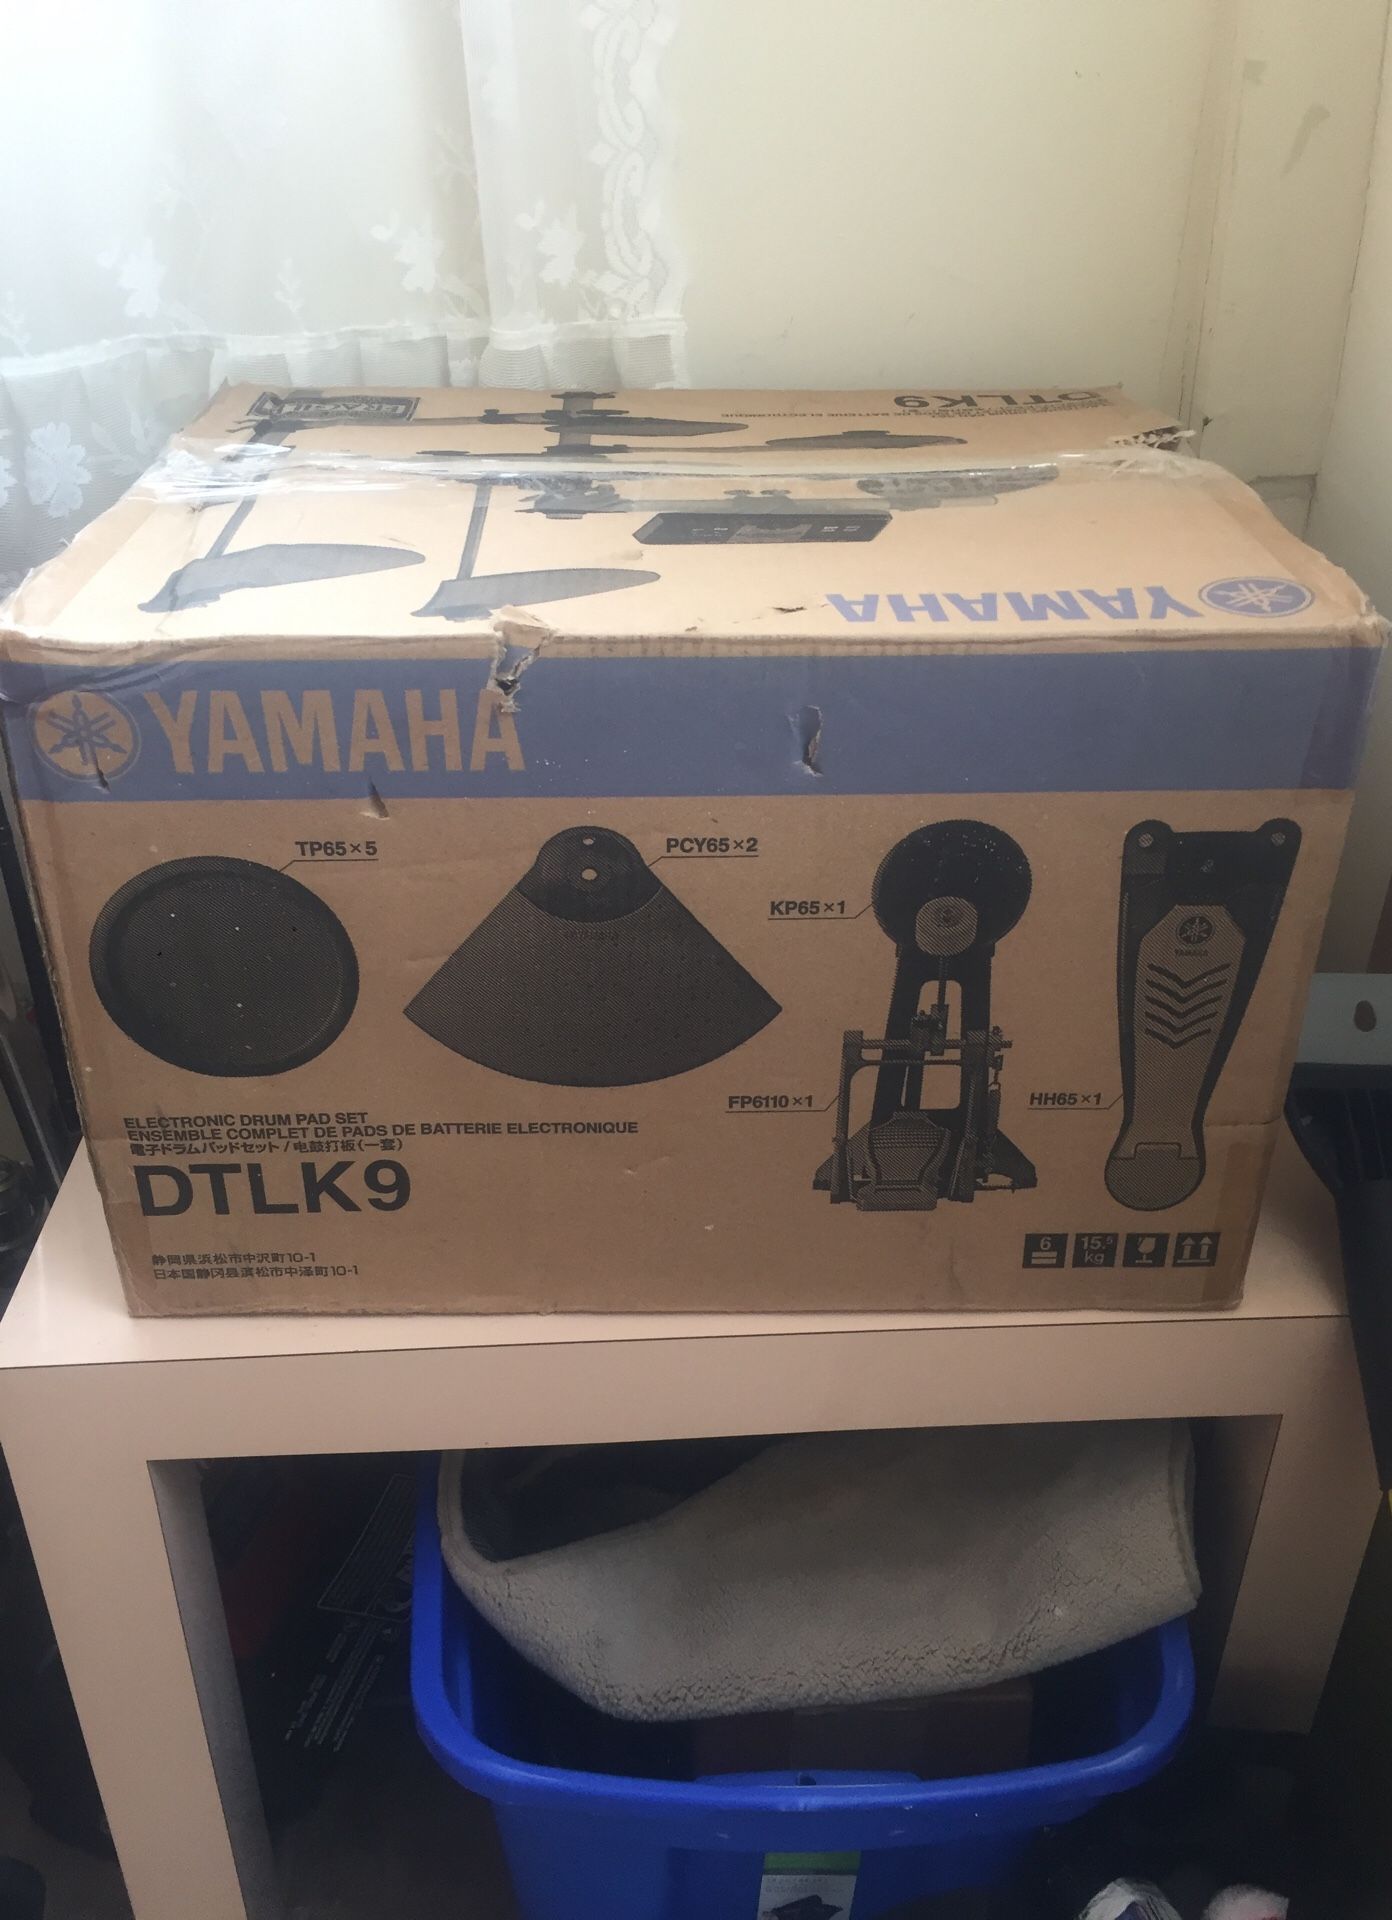 Yamaha DTLK9 electronic drum pad set